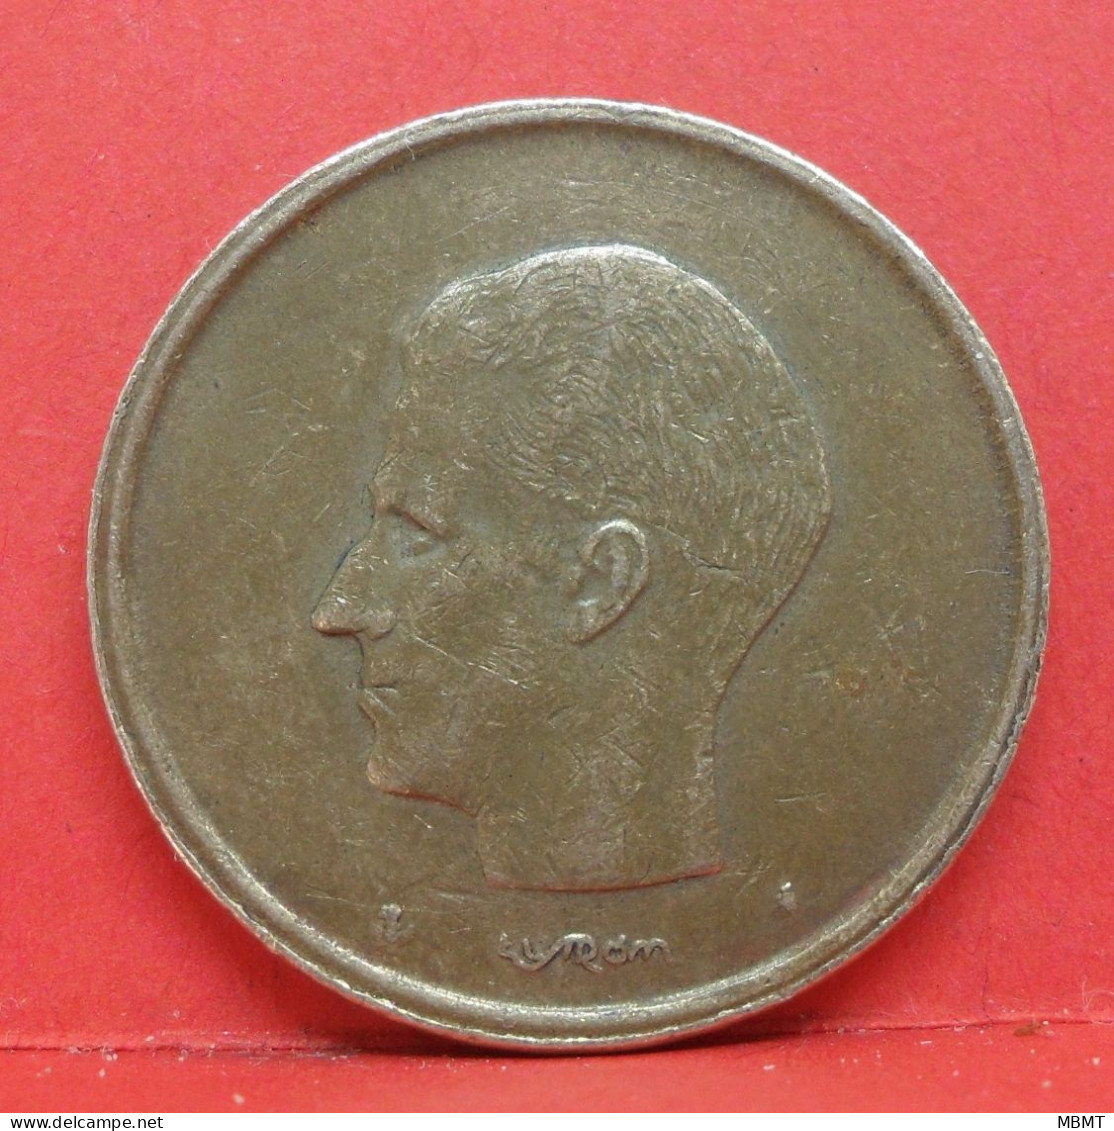 20 Francs 1981 - TTB - Pièce Monnaie Belgique - Article N°1845 - 20 Francs